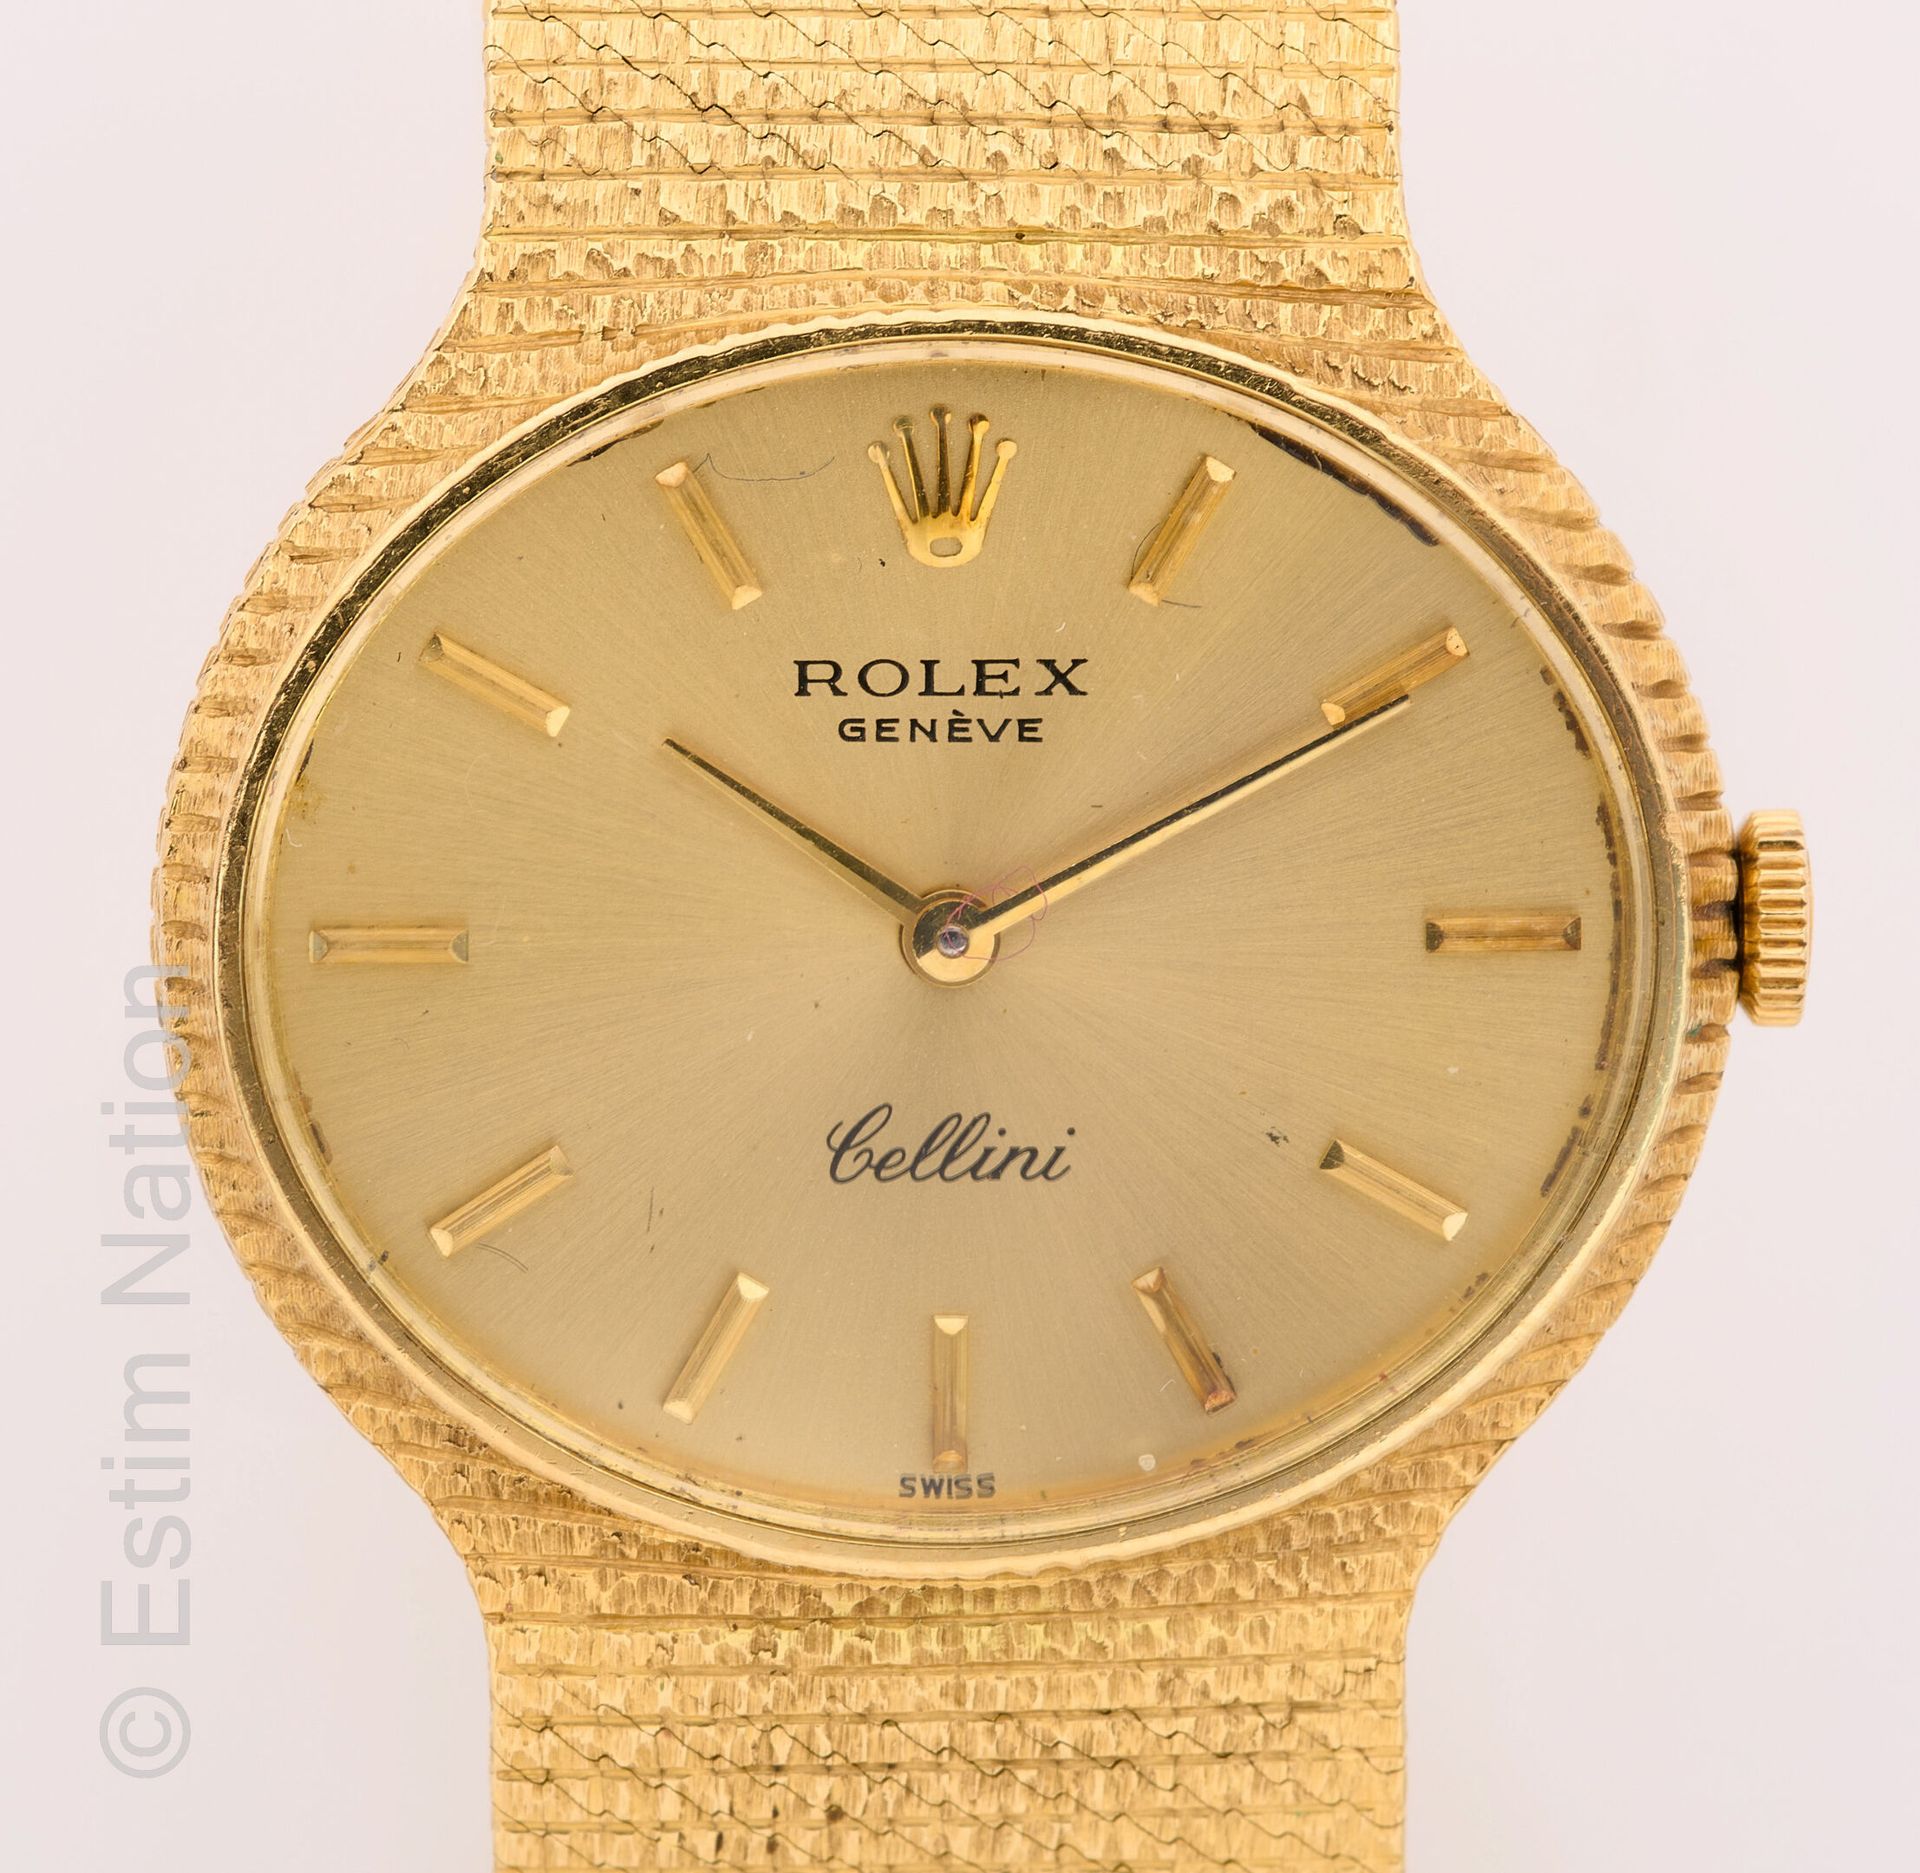 ROLEX Cellini
Referenza 3981
Orologio da donna in oro giallo 18 carati 750 mille&hellip;